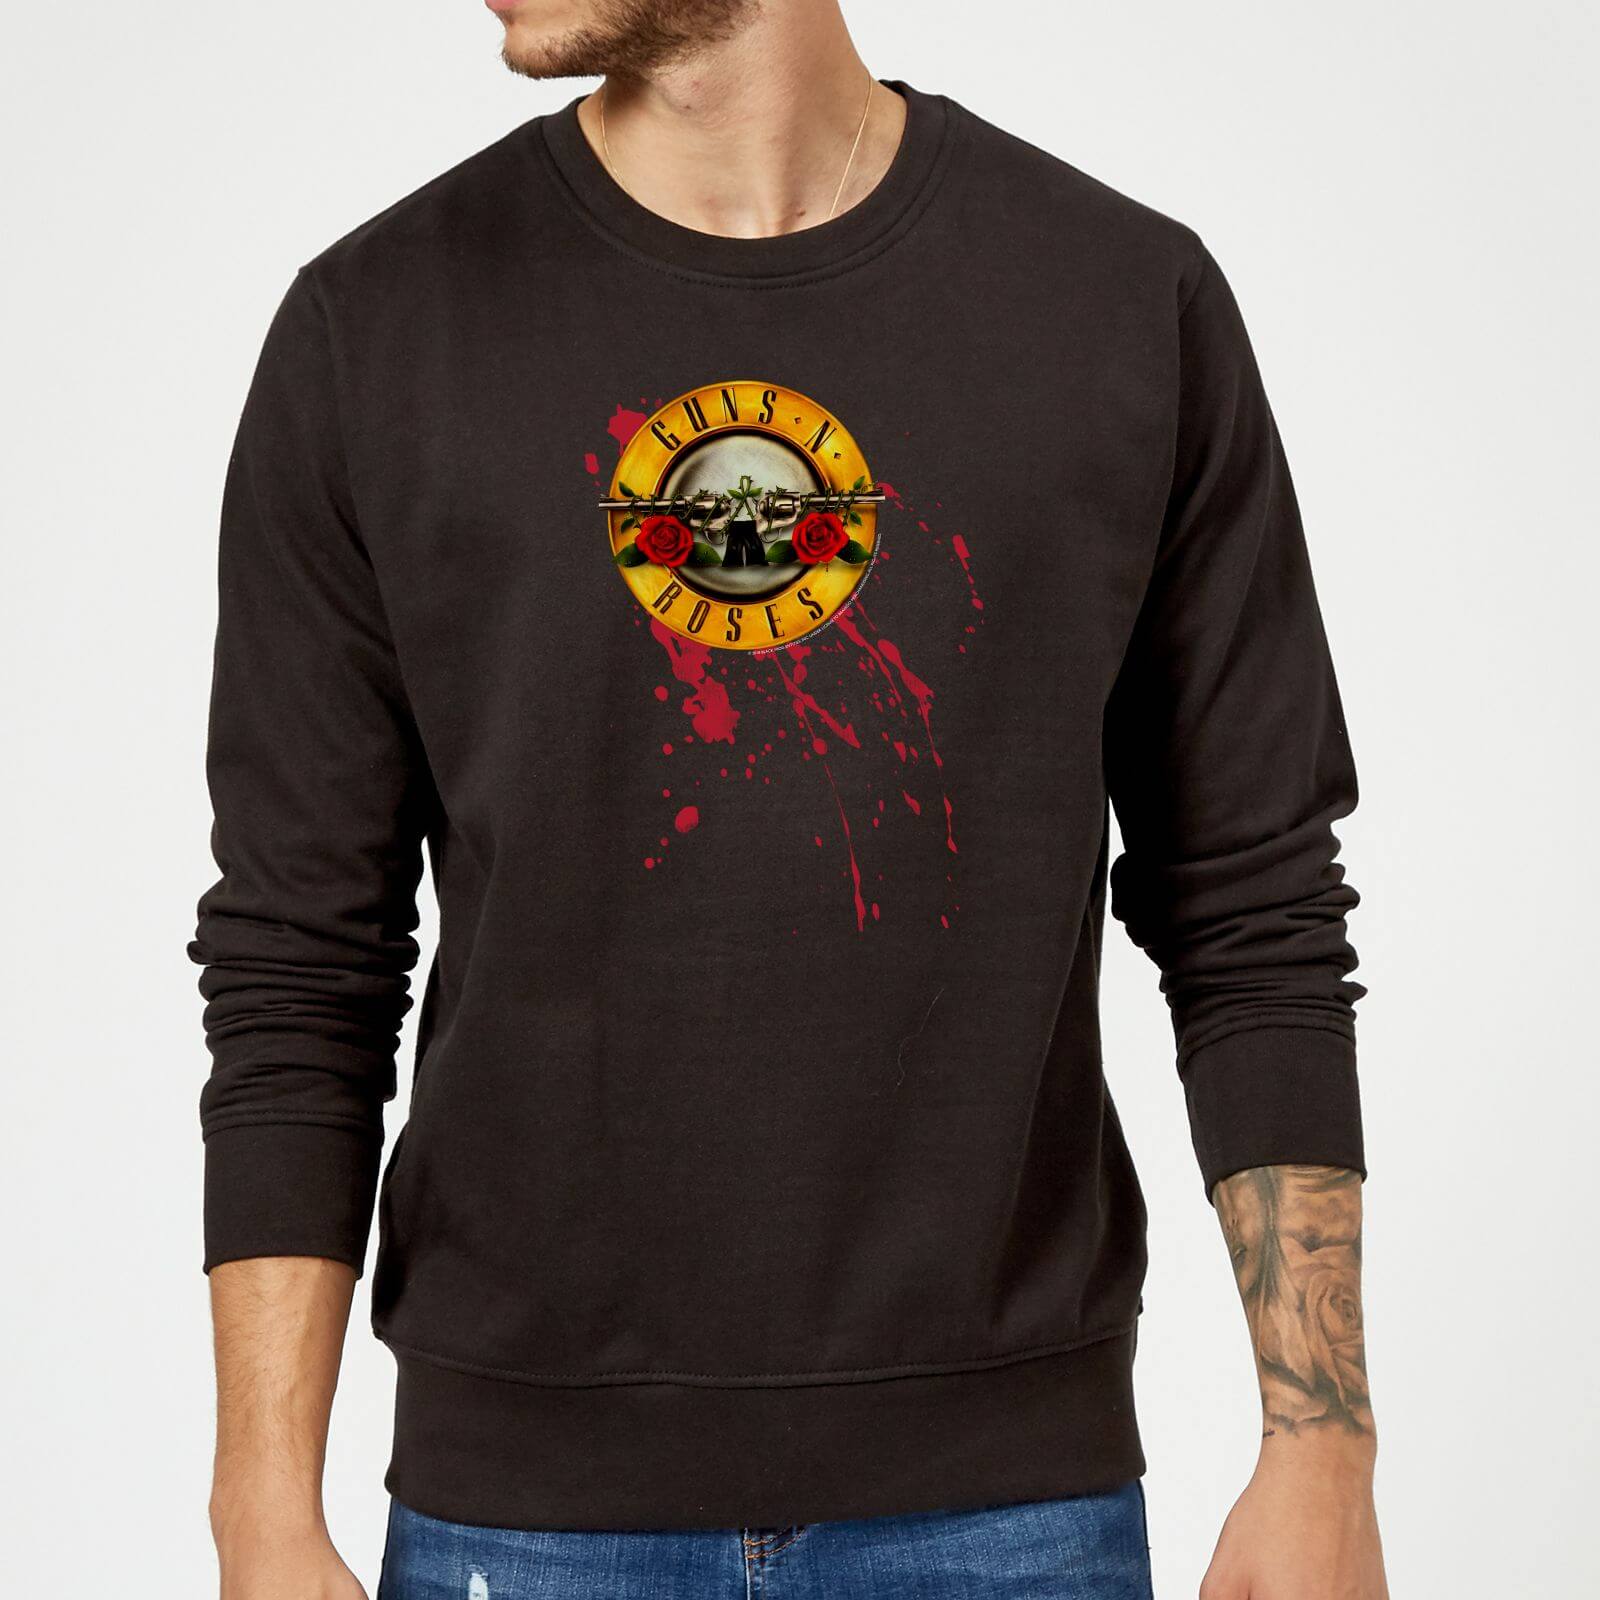 Guns N Roses Bloody Bullet Sweatshirt - Black - S - Black